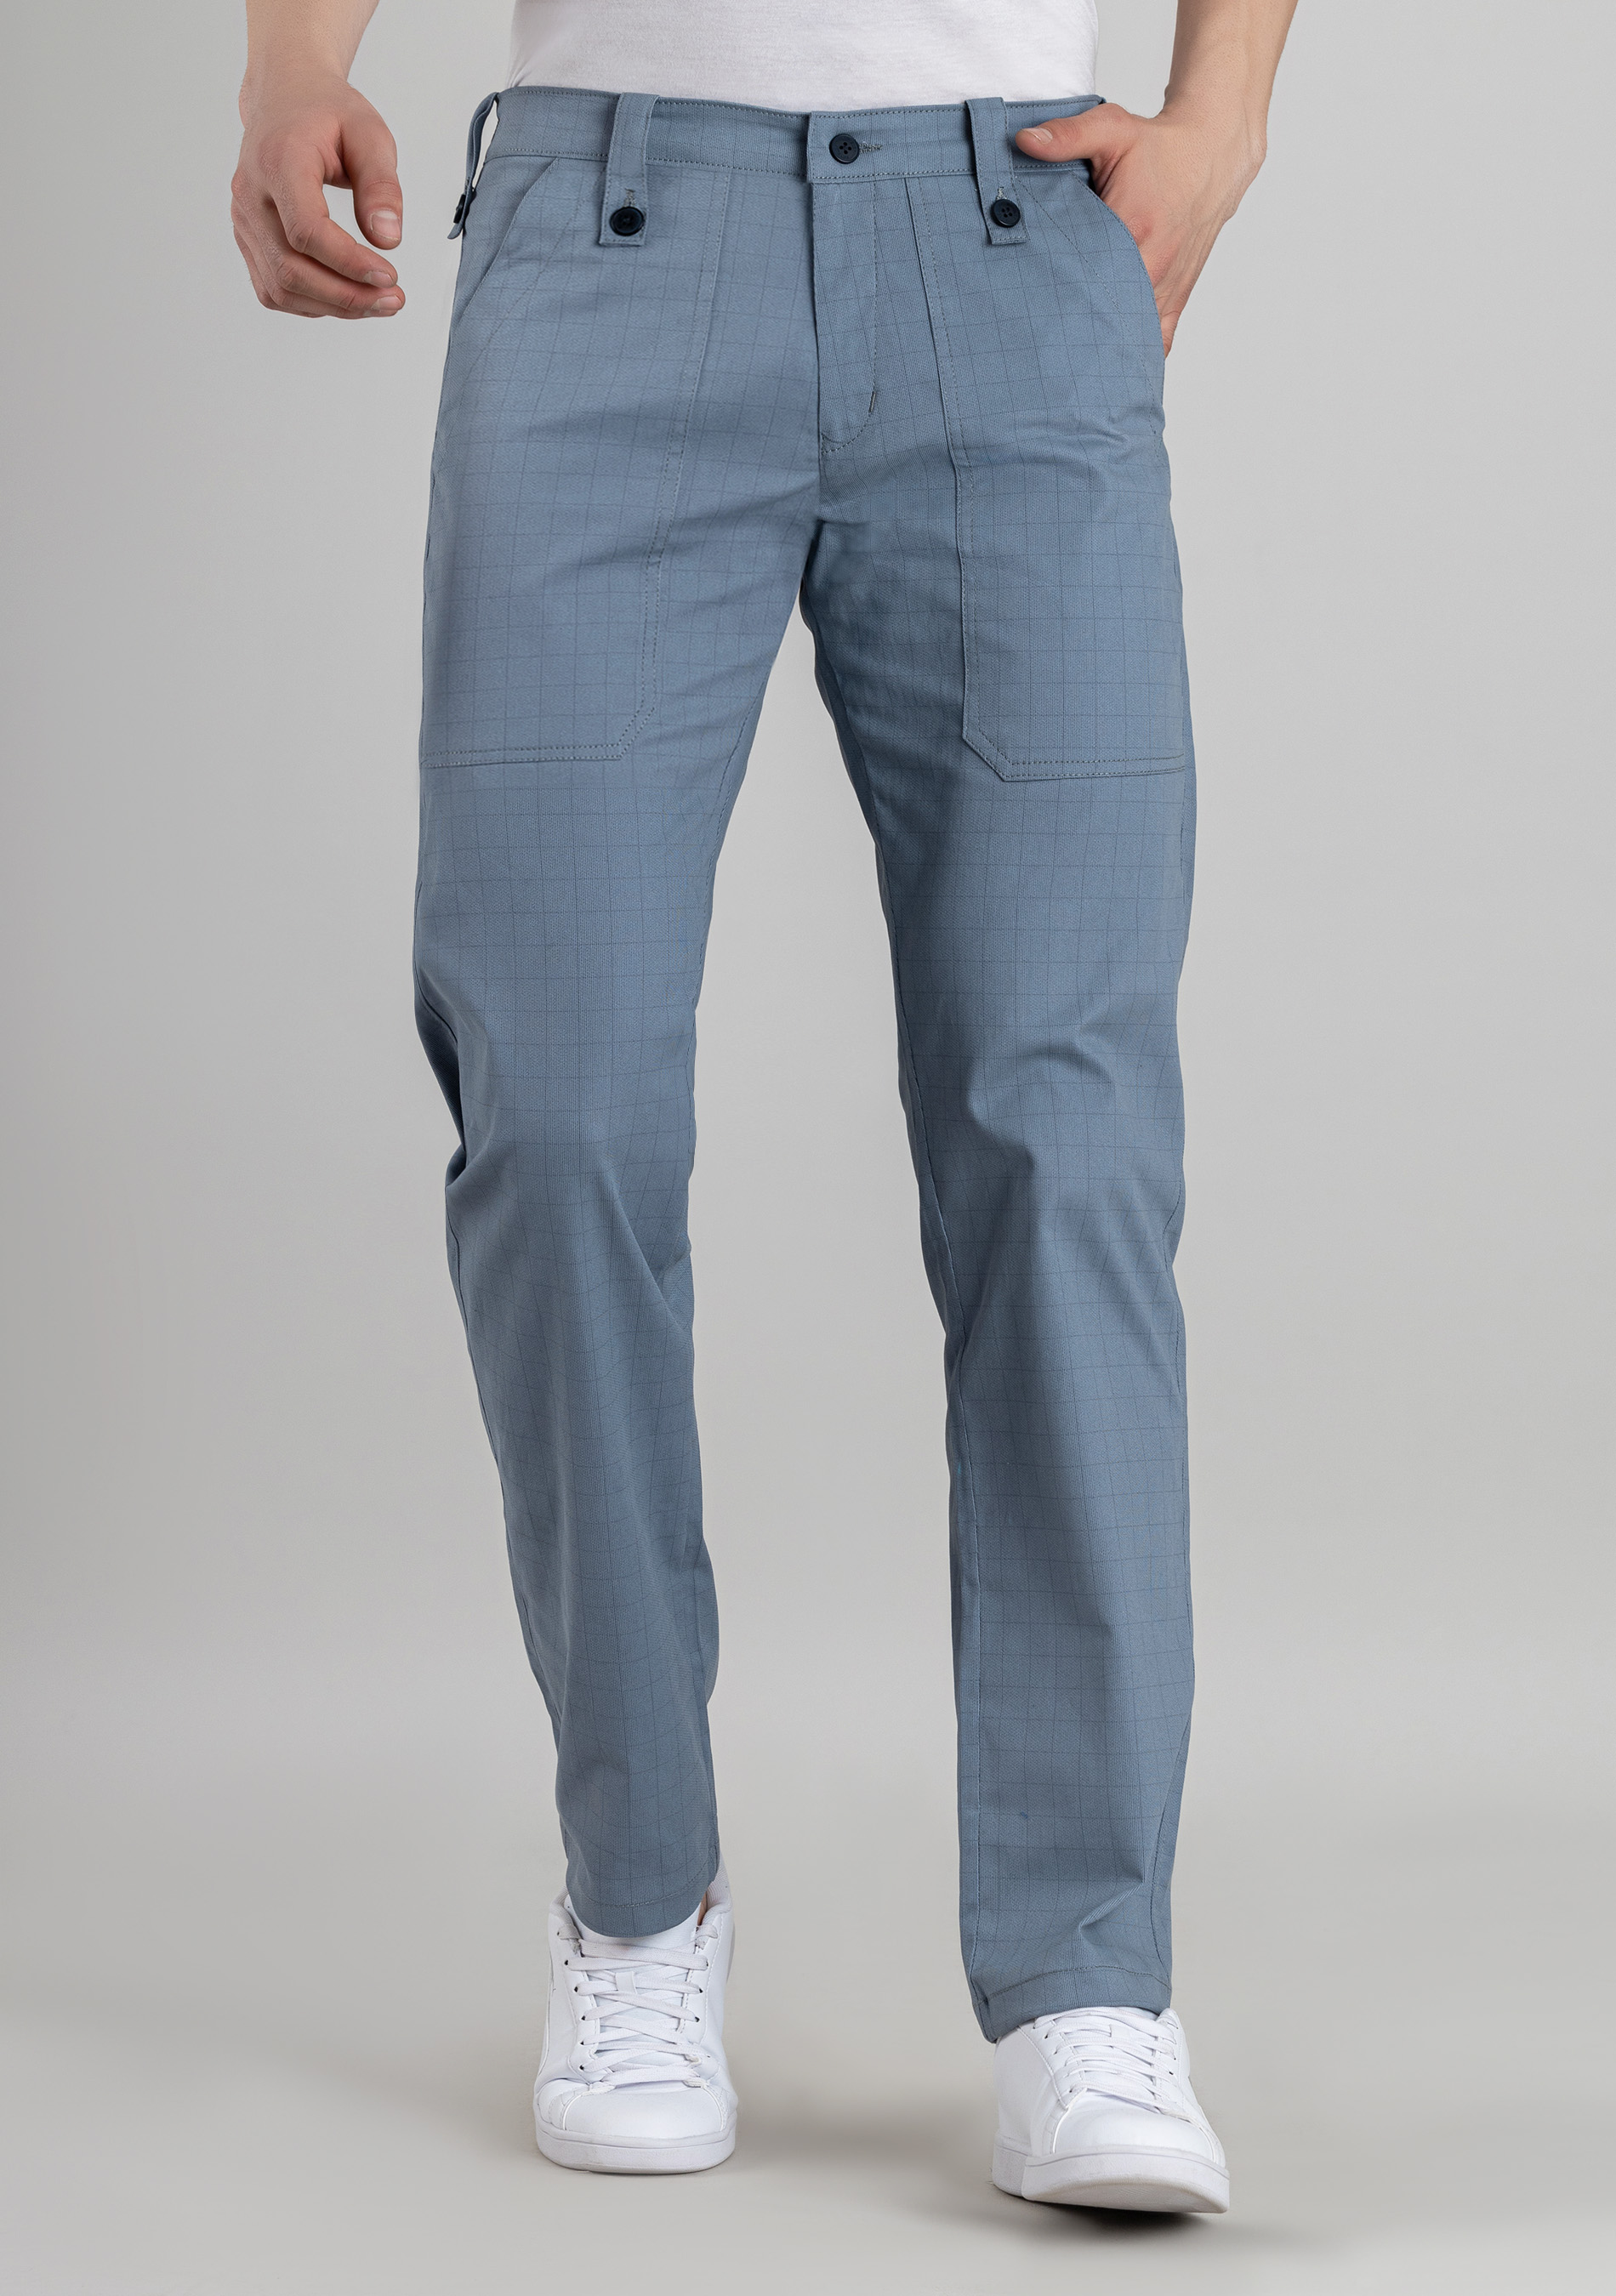 Men's Comfy Cotton Casual Pants Chic Trousers Dress Pants - Temu